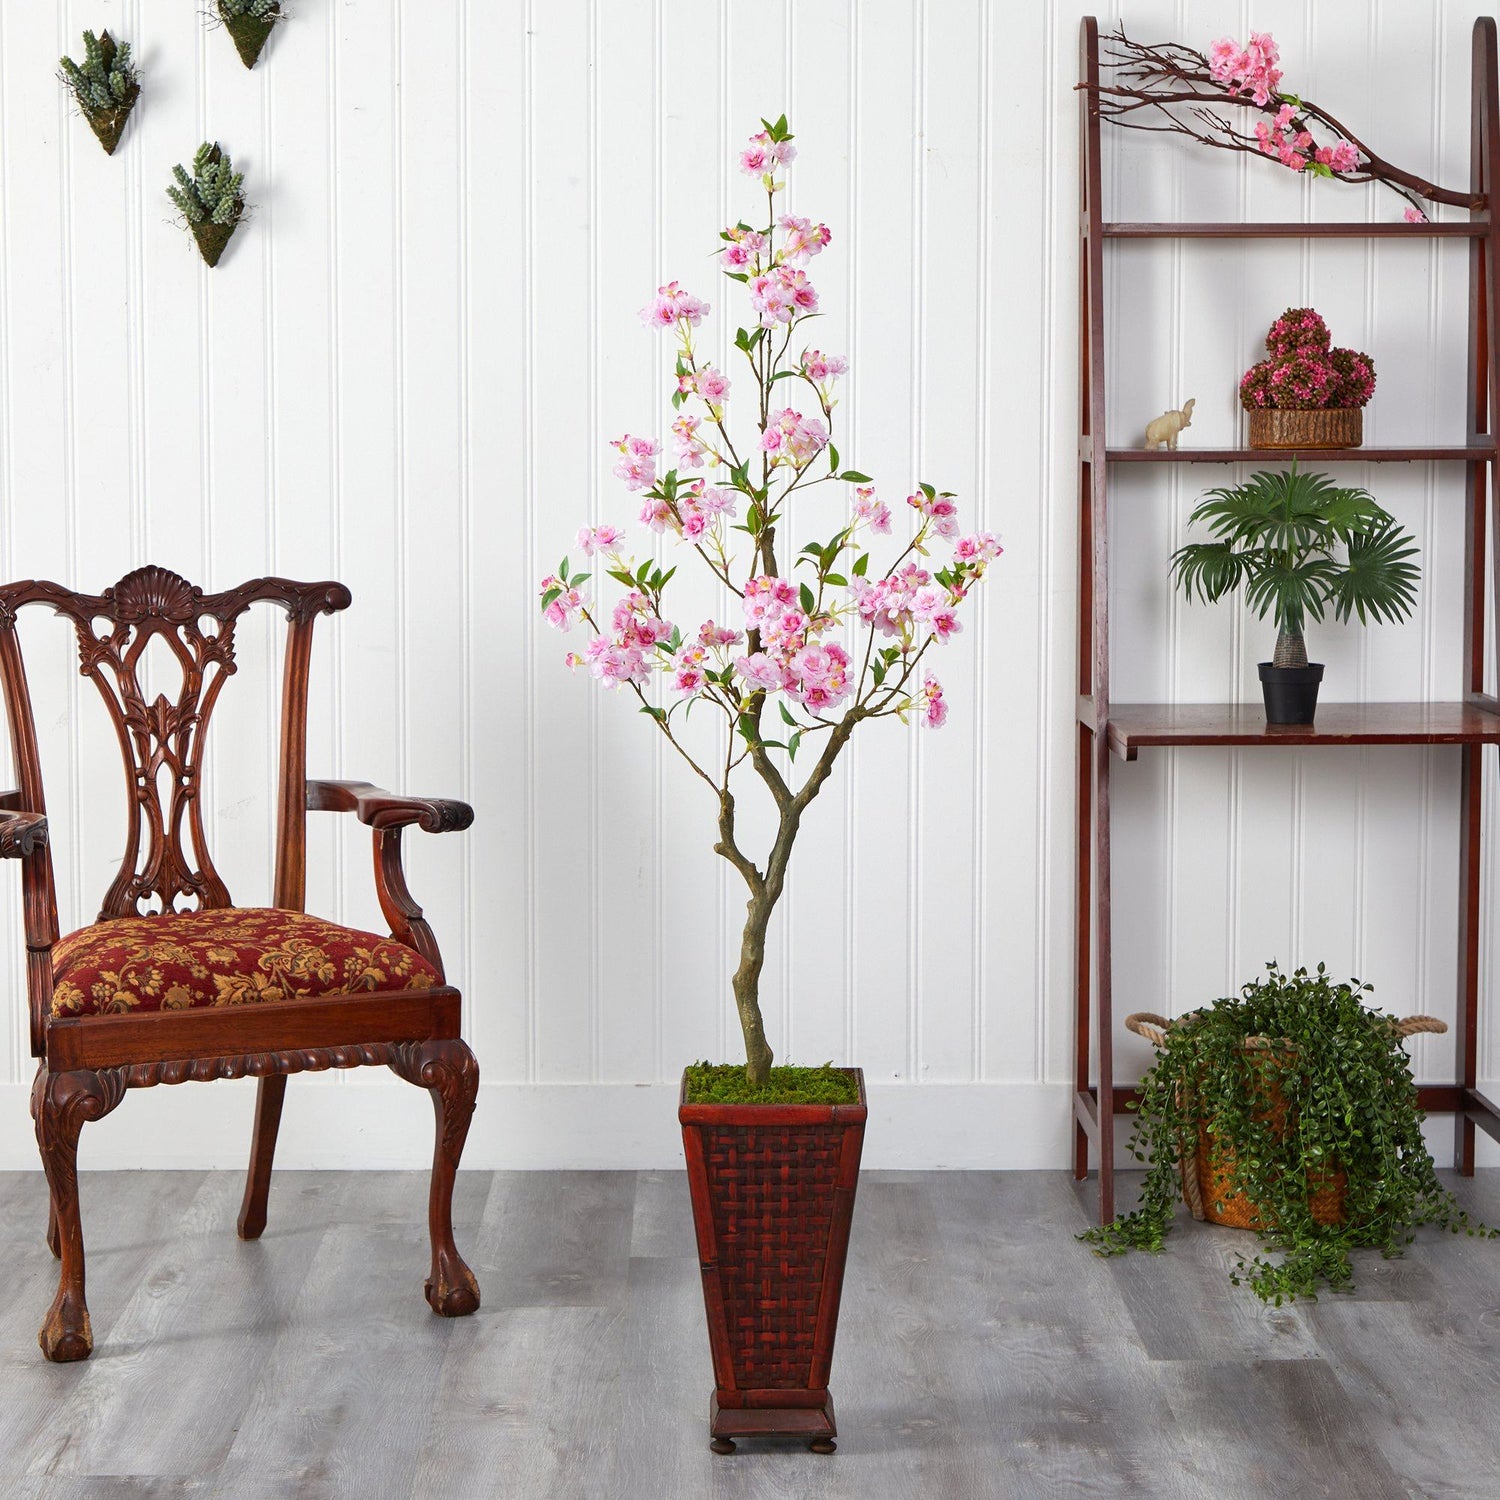 5’ Cherry Blossom Artificial Tree in Decorative Planter